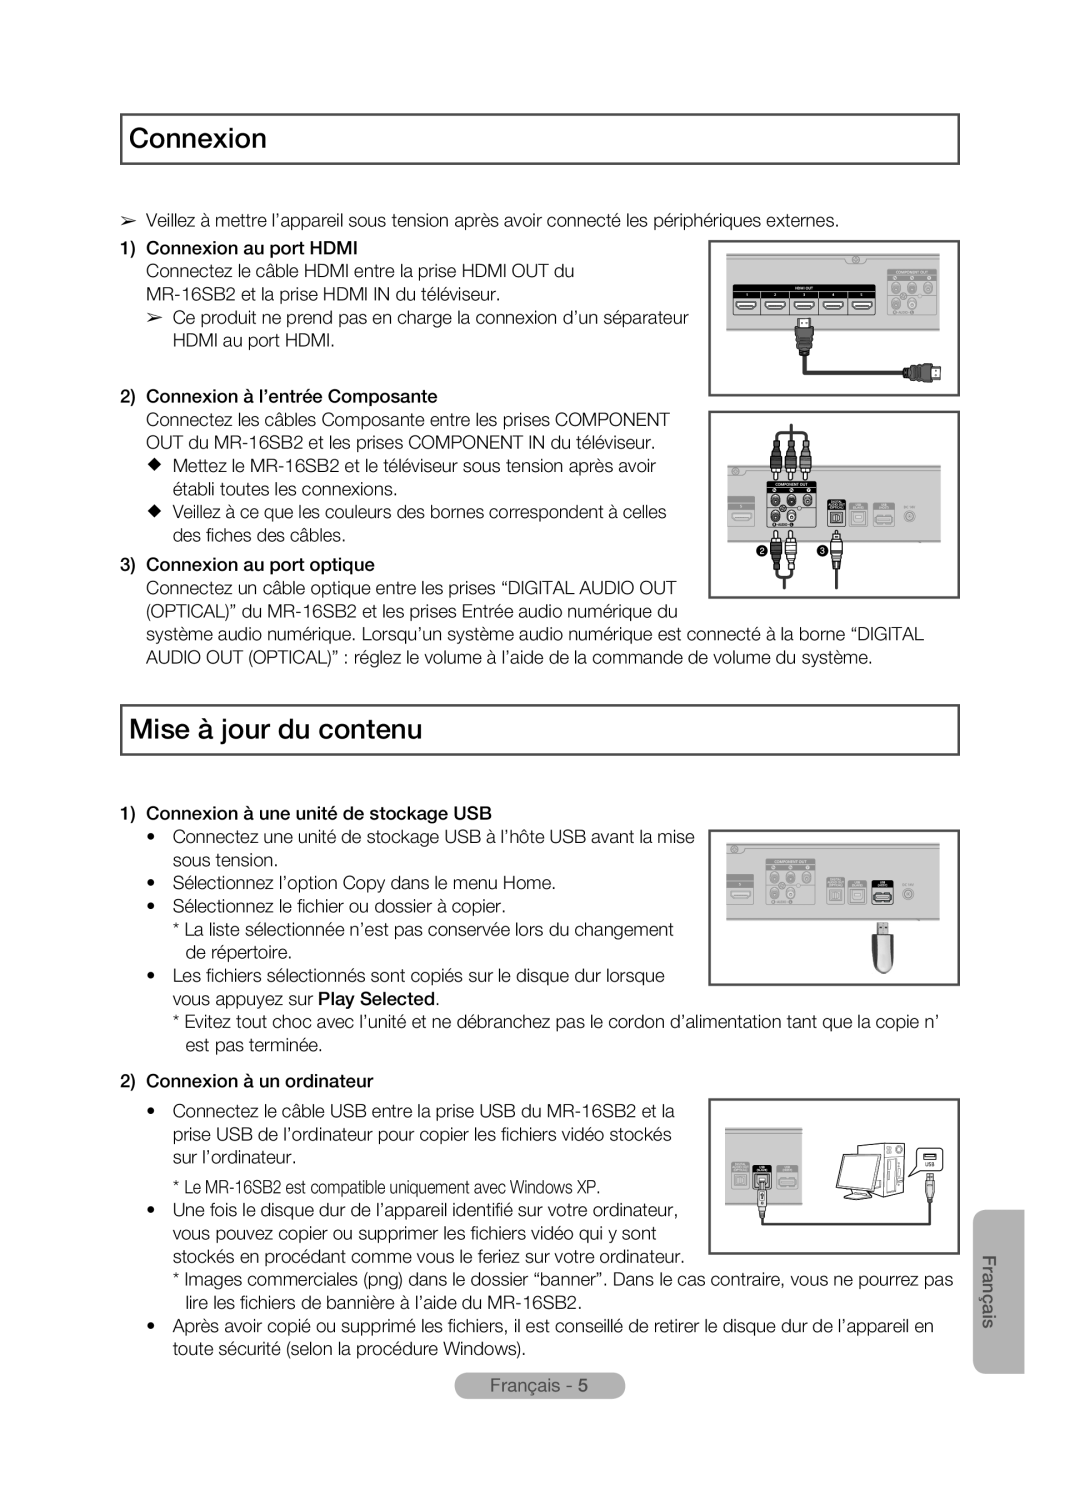 Samsung MR-16SB2 manual Connexion, Mise à jour du contenu, Français 